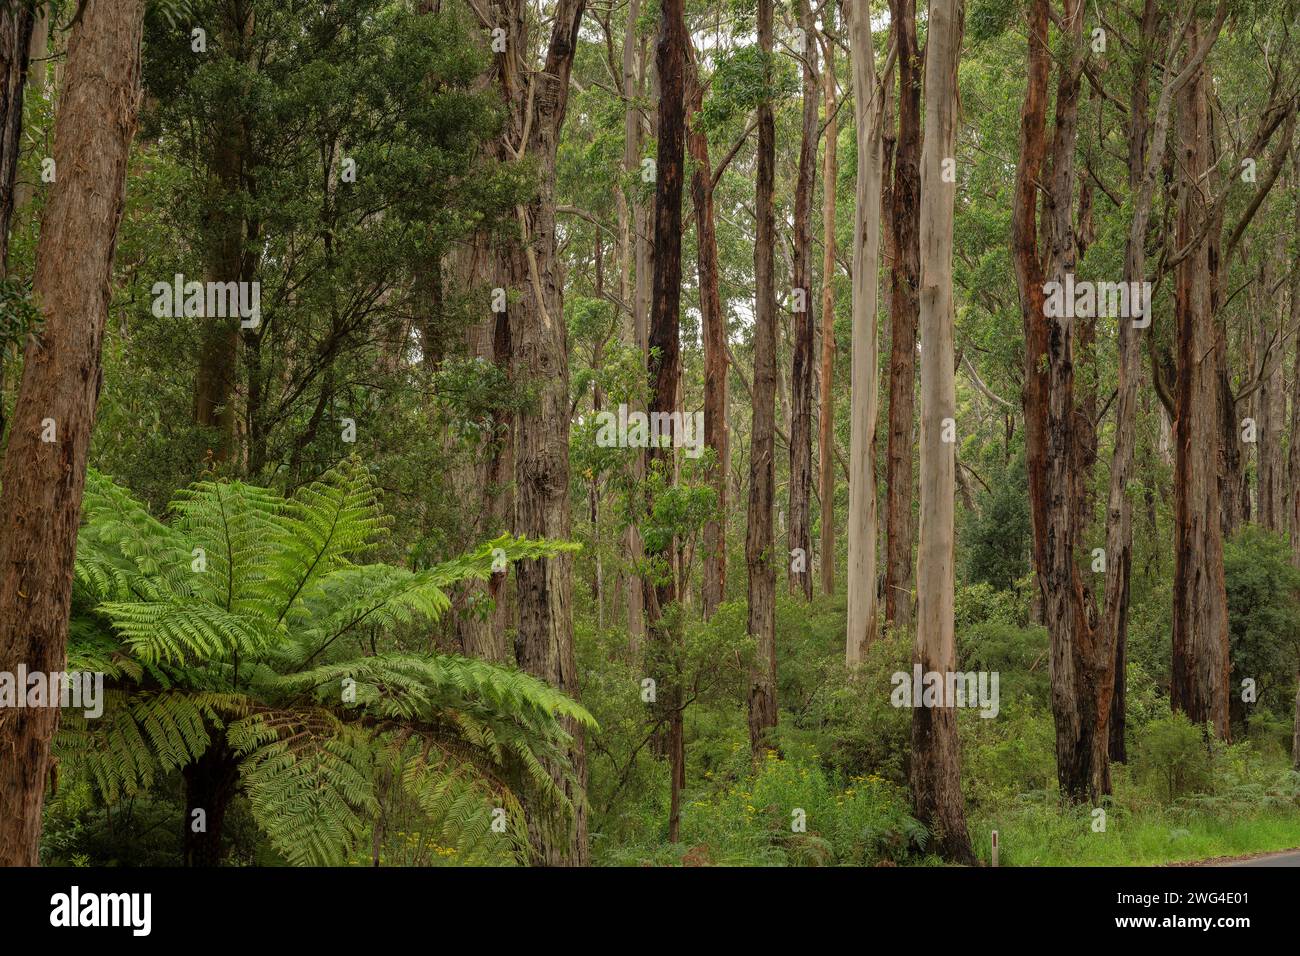 Foresta mista di eucalipto nel Port Campbell National Park, Great Ocean Road, Victoria, Australia. Ottima area per mangiare i koala. Foto Stock